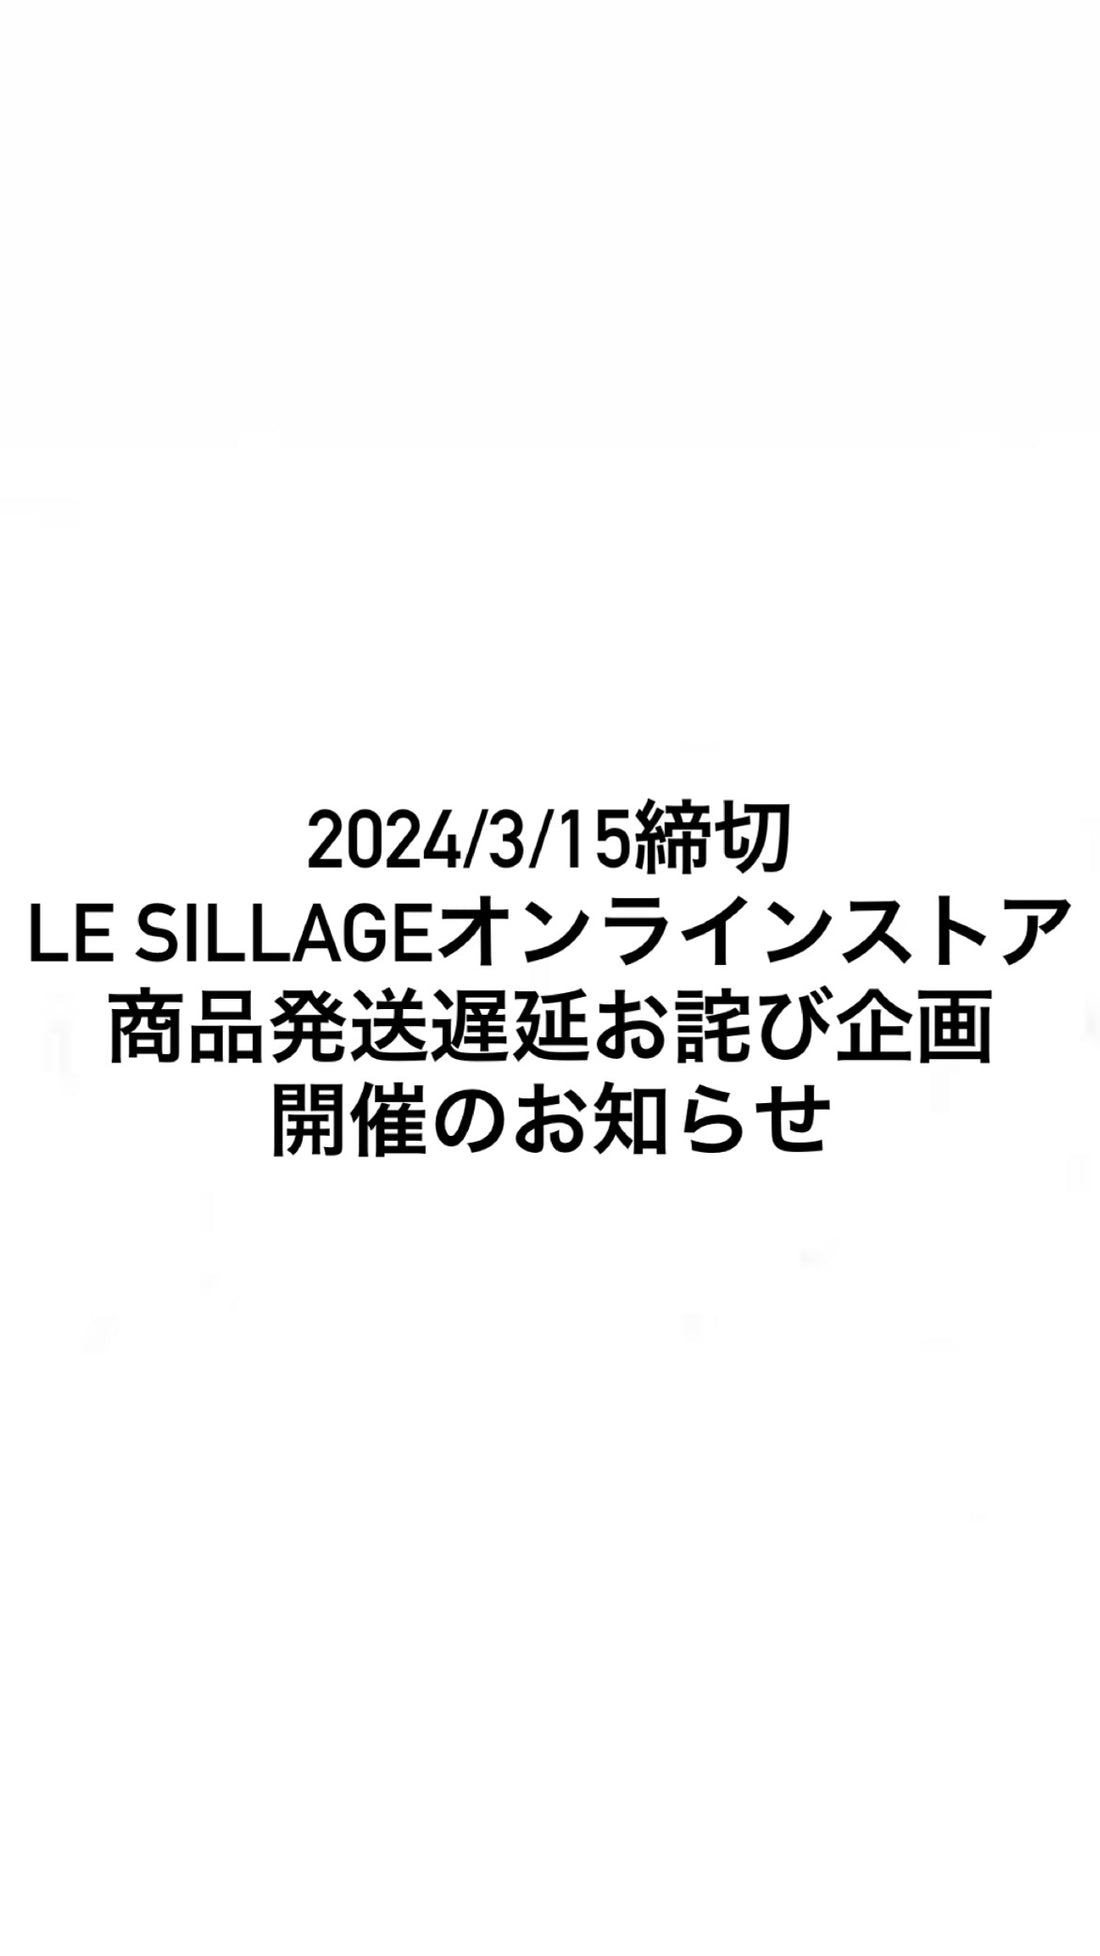 2024/3/15締切 LE SILLAGEオンラインストア 商品発送遅延お詫び企画開催のお知らせ